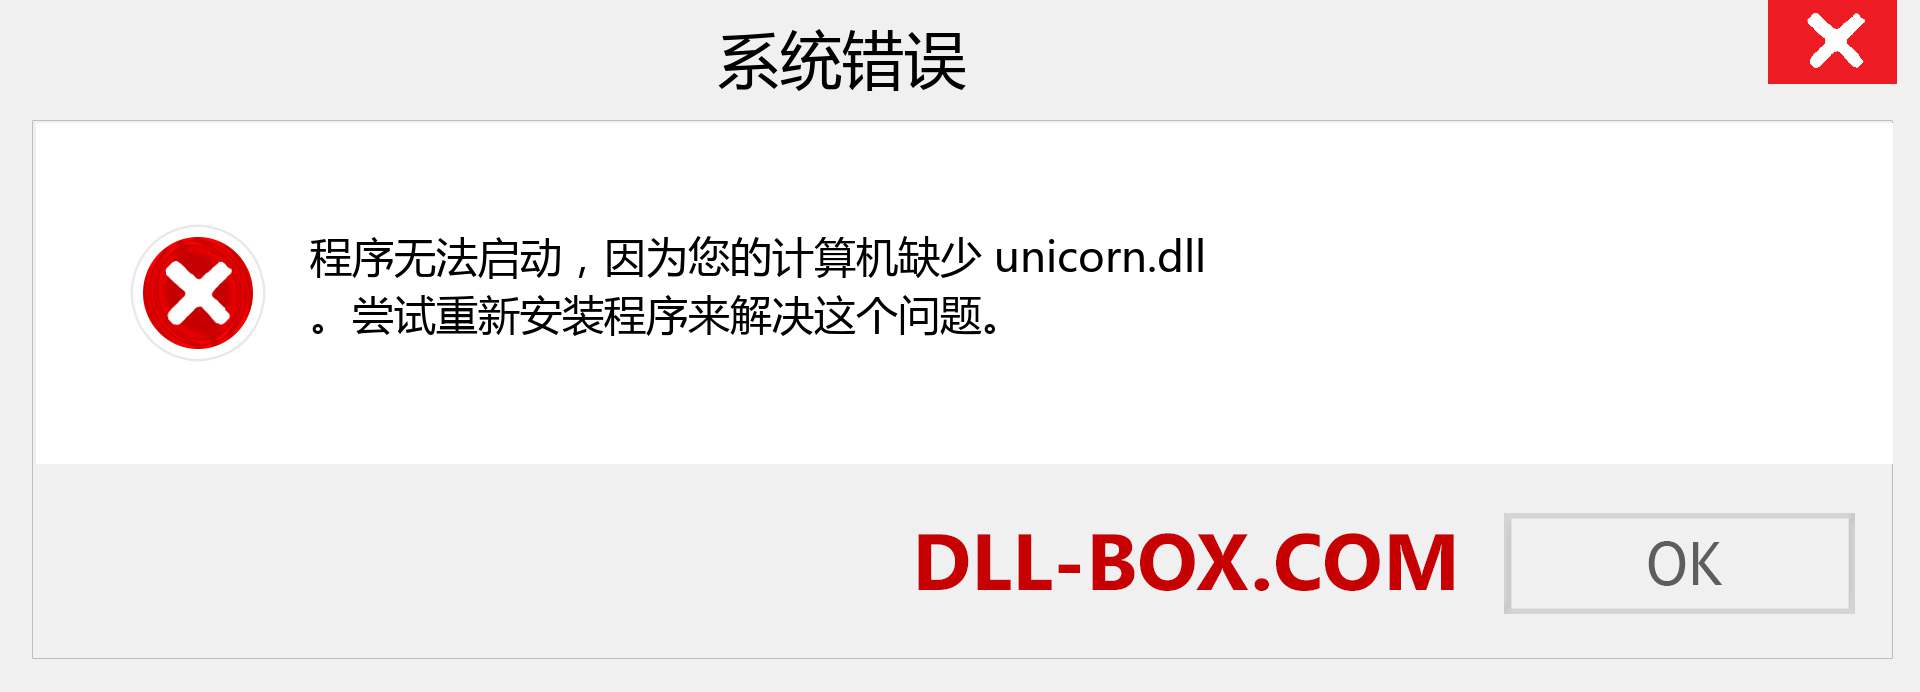 unicorn.dll 文件丢失？。 适用于 Windows 7、8、10 的下载 - 修复 Windows、照片、图像上的 unicorn dll 丢失错误